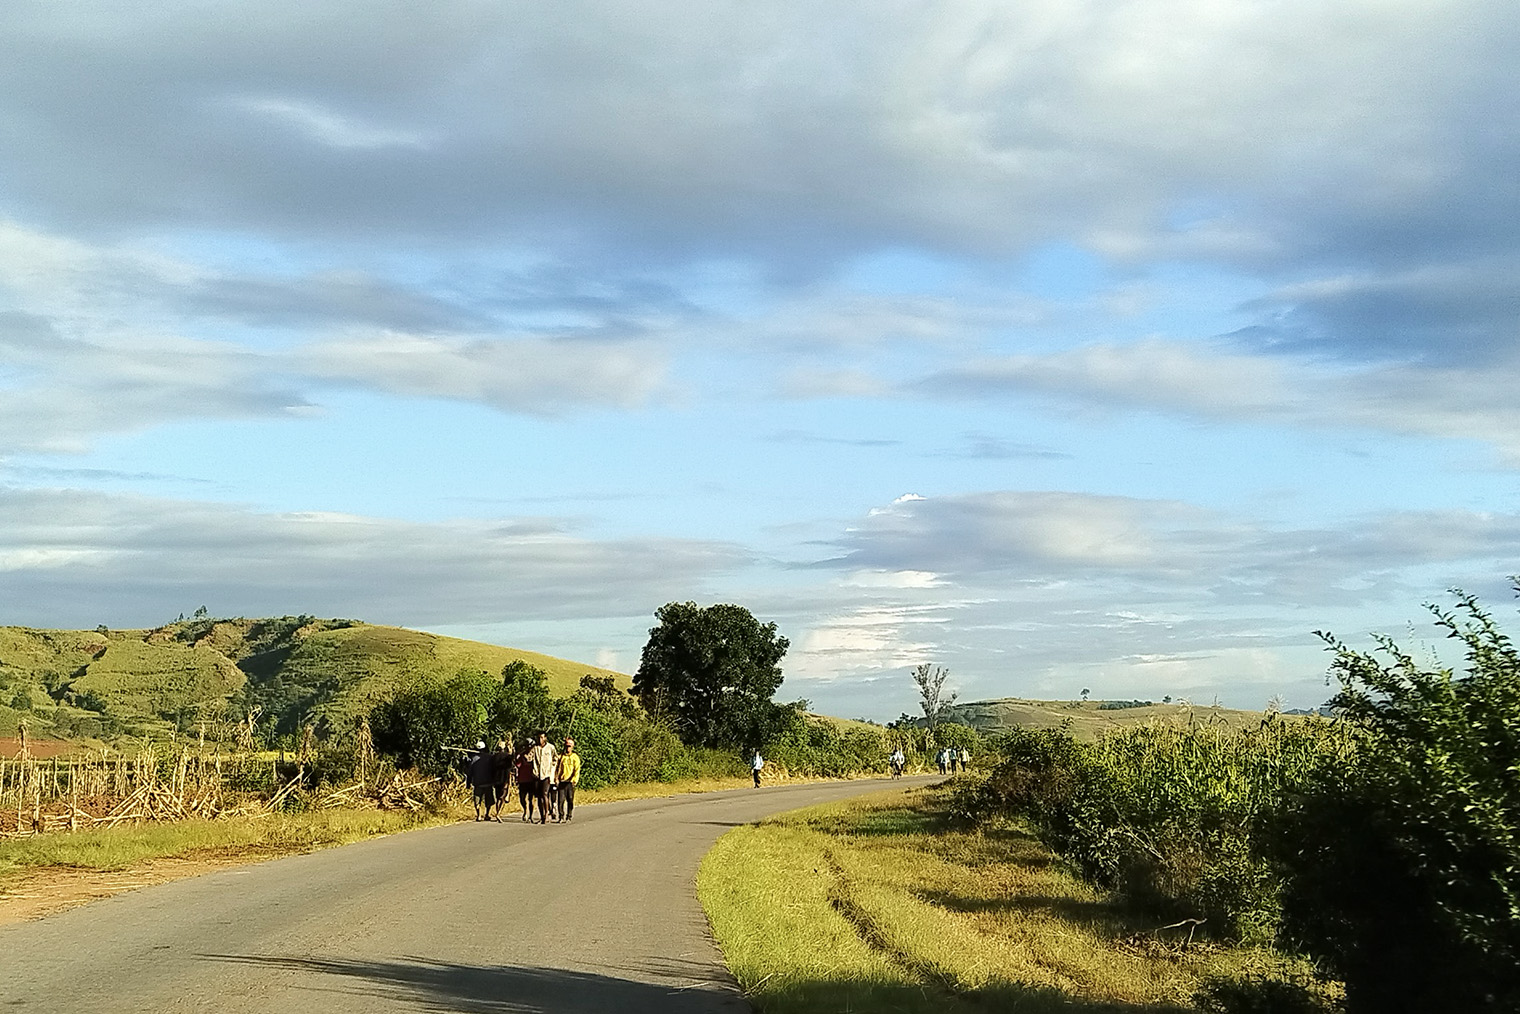 После посещения чайной плантации мы поехали до города Мурундава и знаменитой Аллеи баобабов. Она находится на западном побережье. Мы там были в поисках племени микеа, но из⁠-⁠за размытых дорог не смогли проехать по побережью наверх